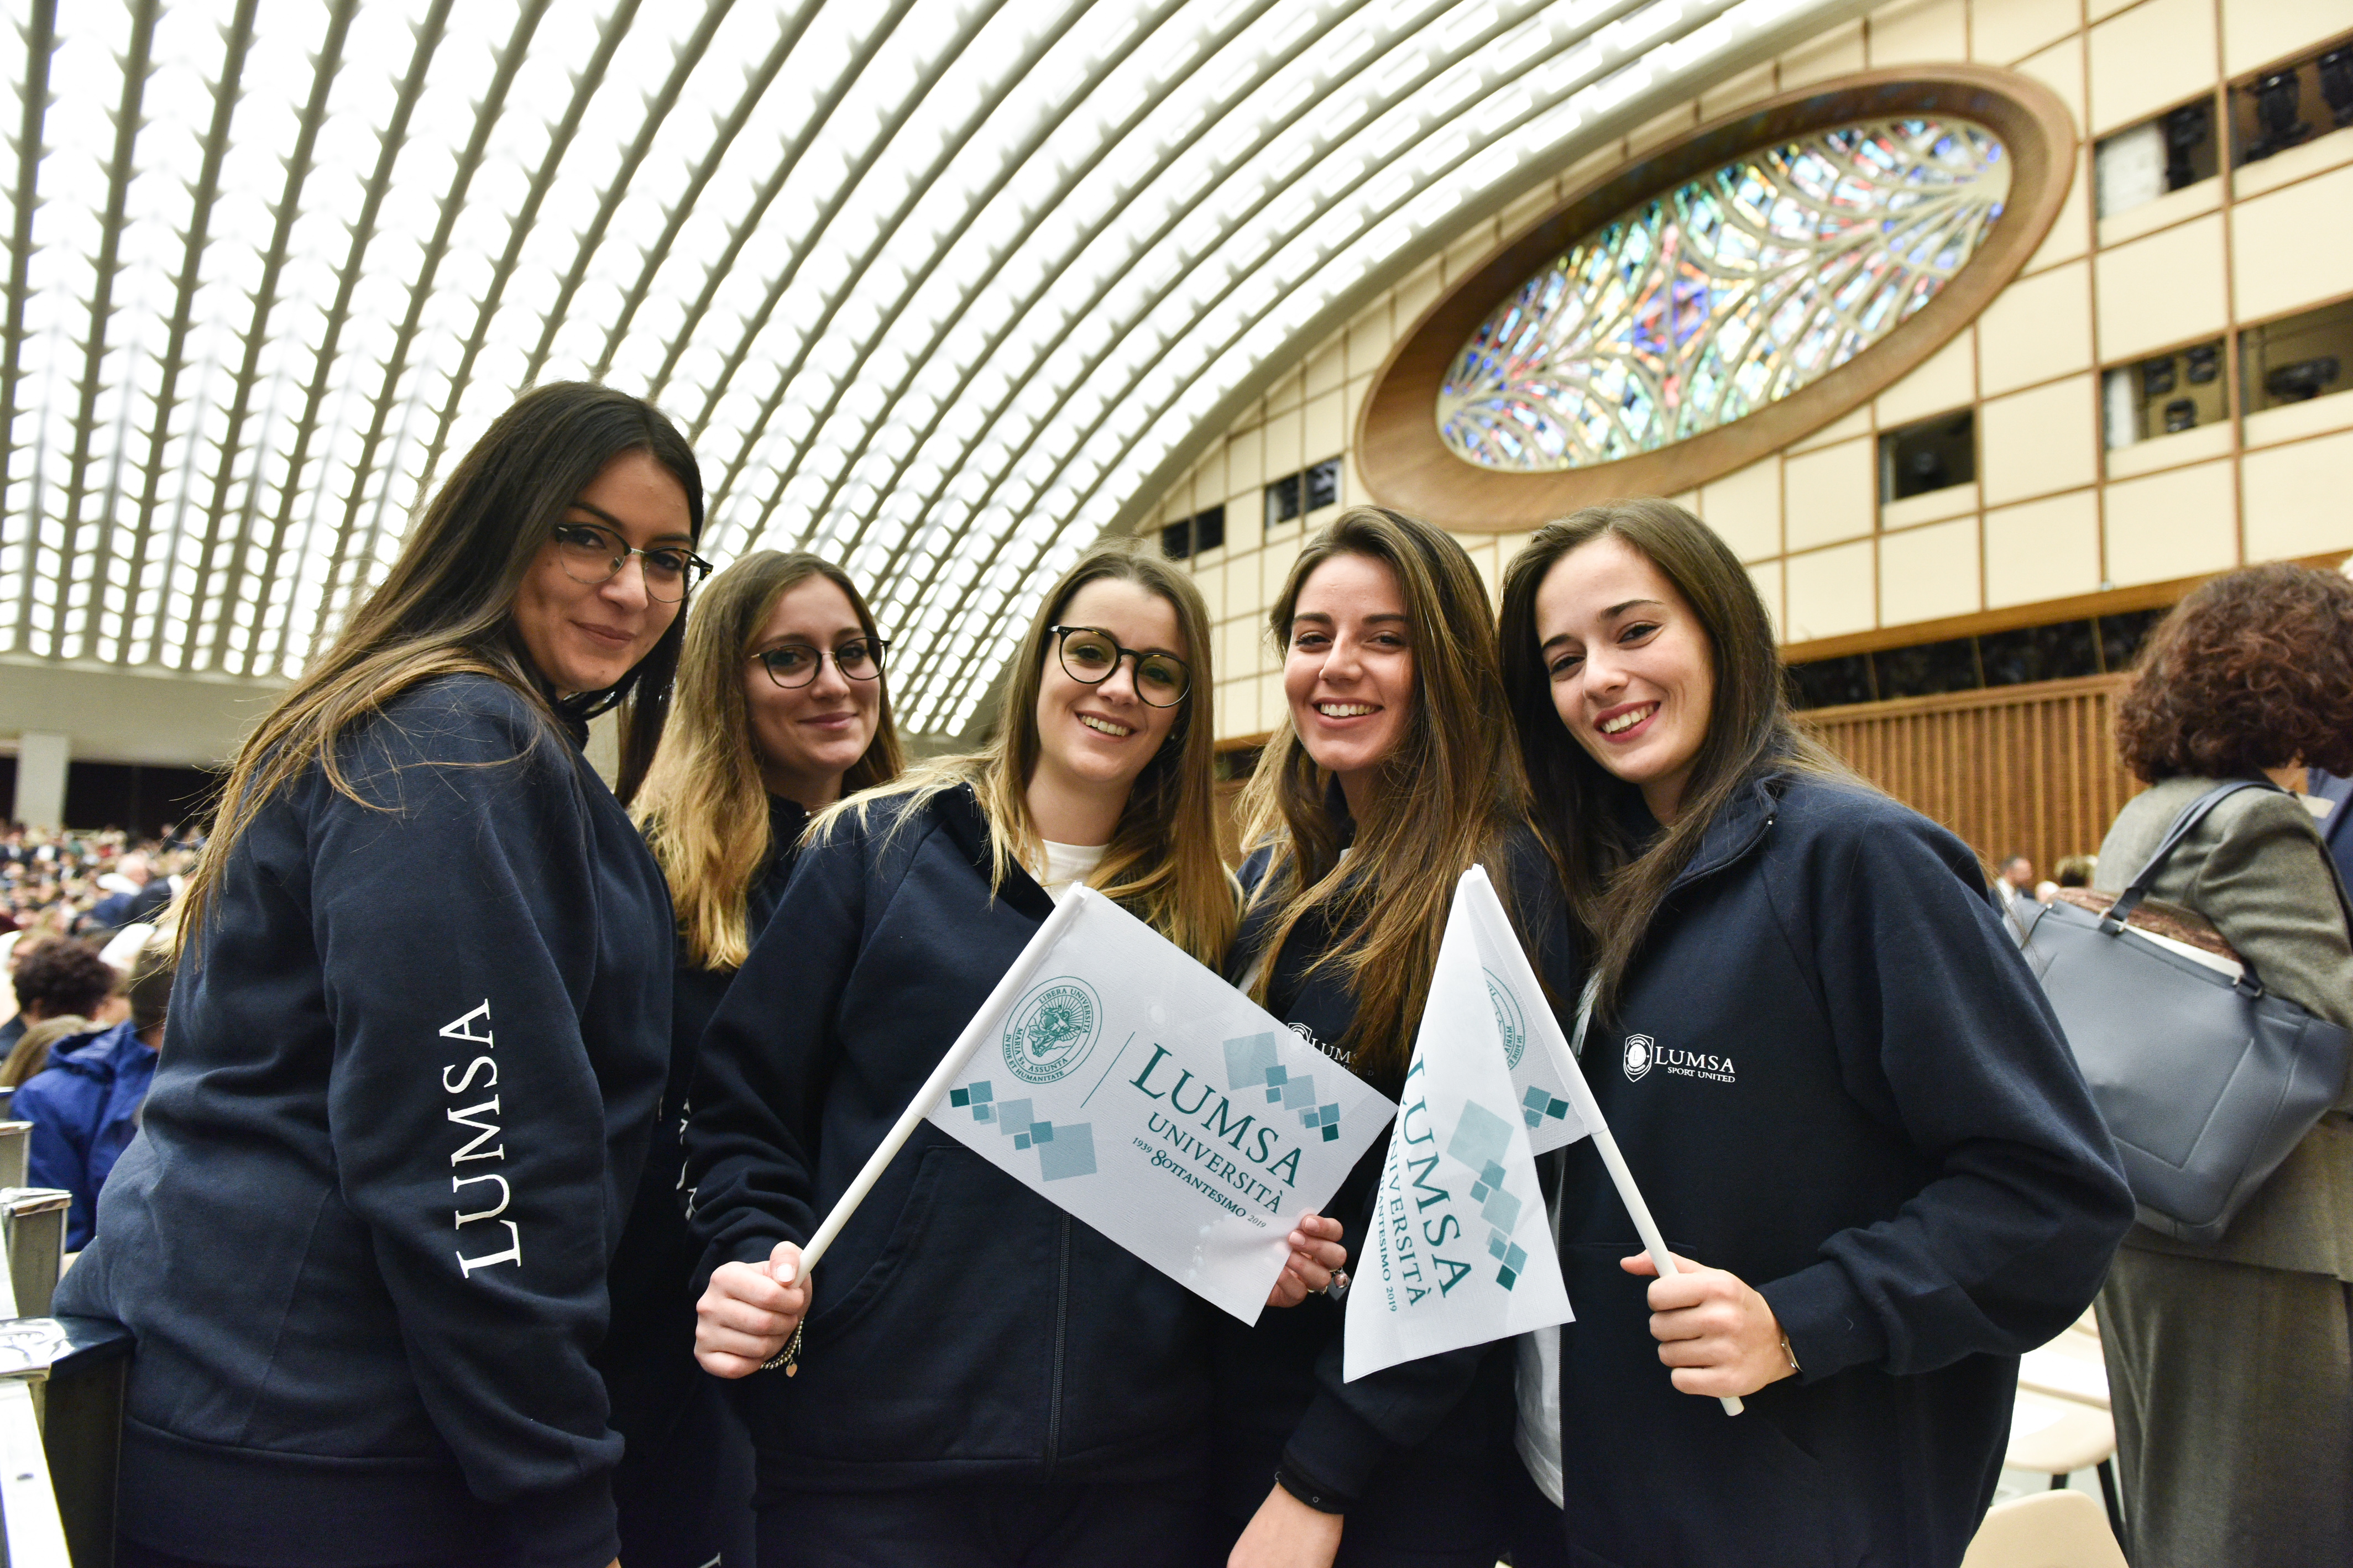 Le studentesse della Lumsa festeggiano l'anniversario della loro università